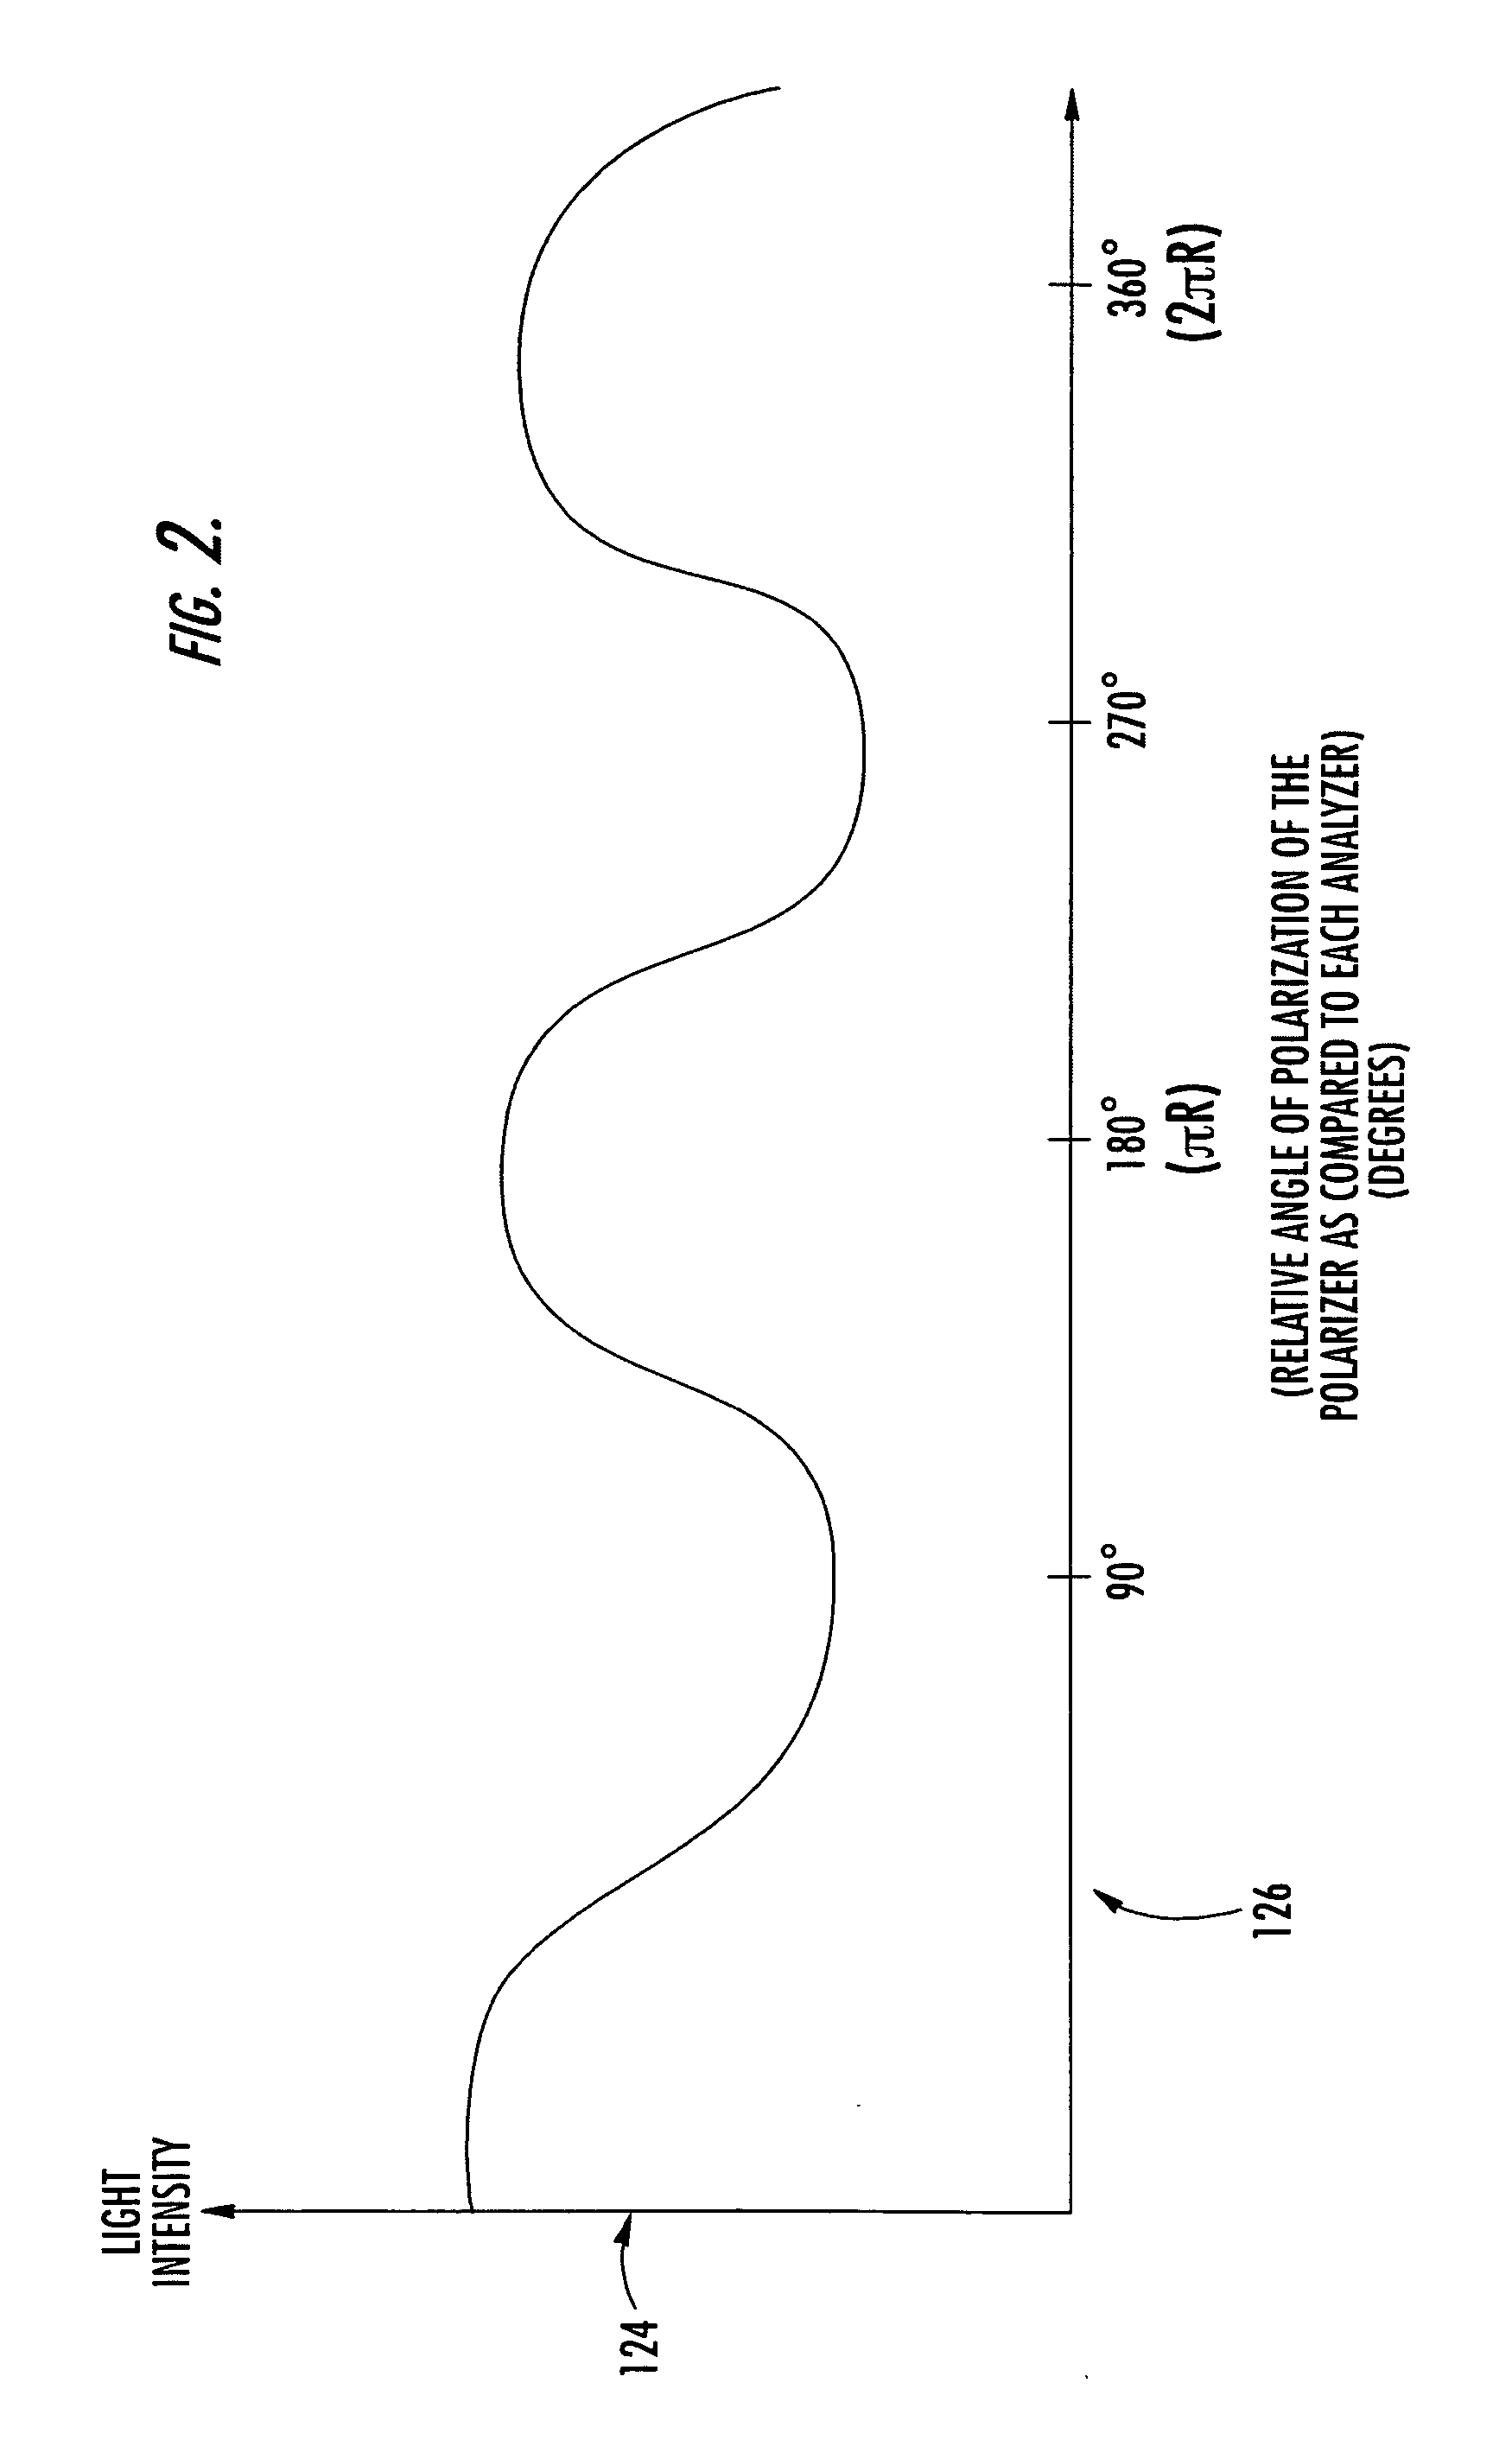 Non-contact optical polarization angle encoder